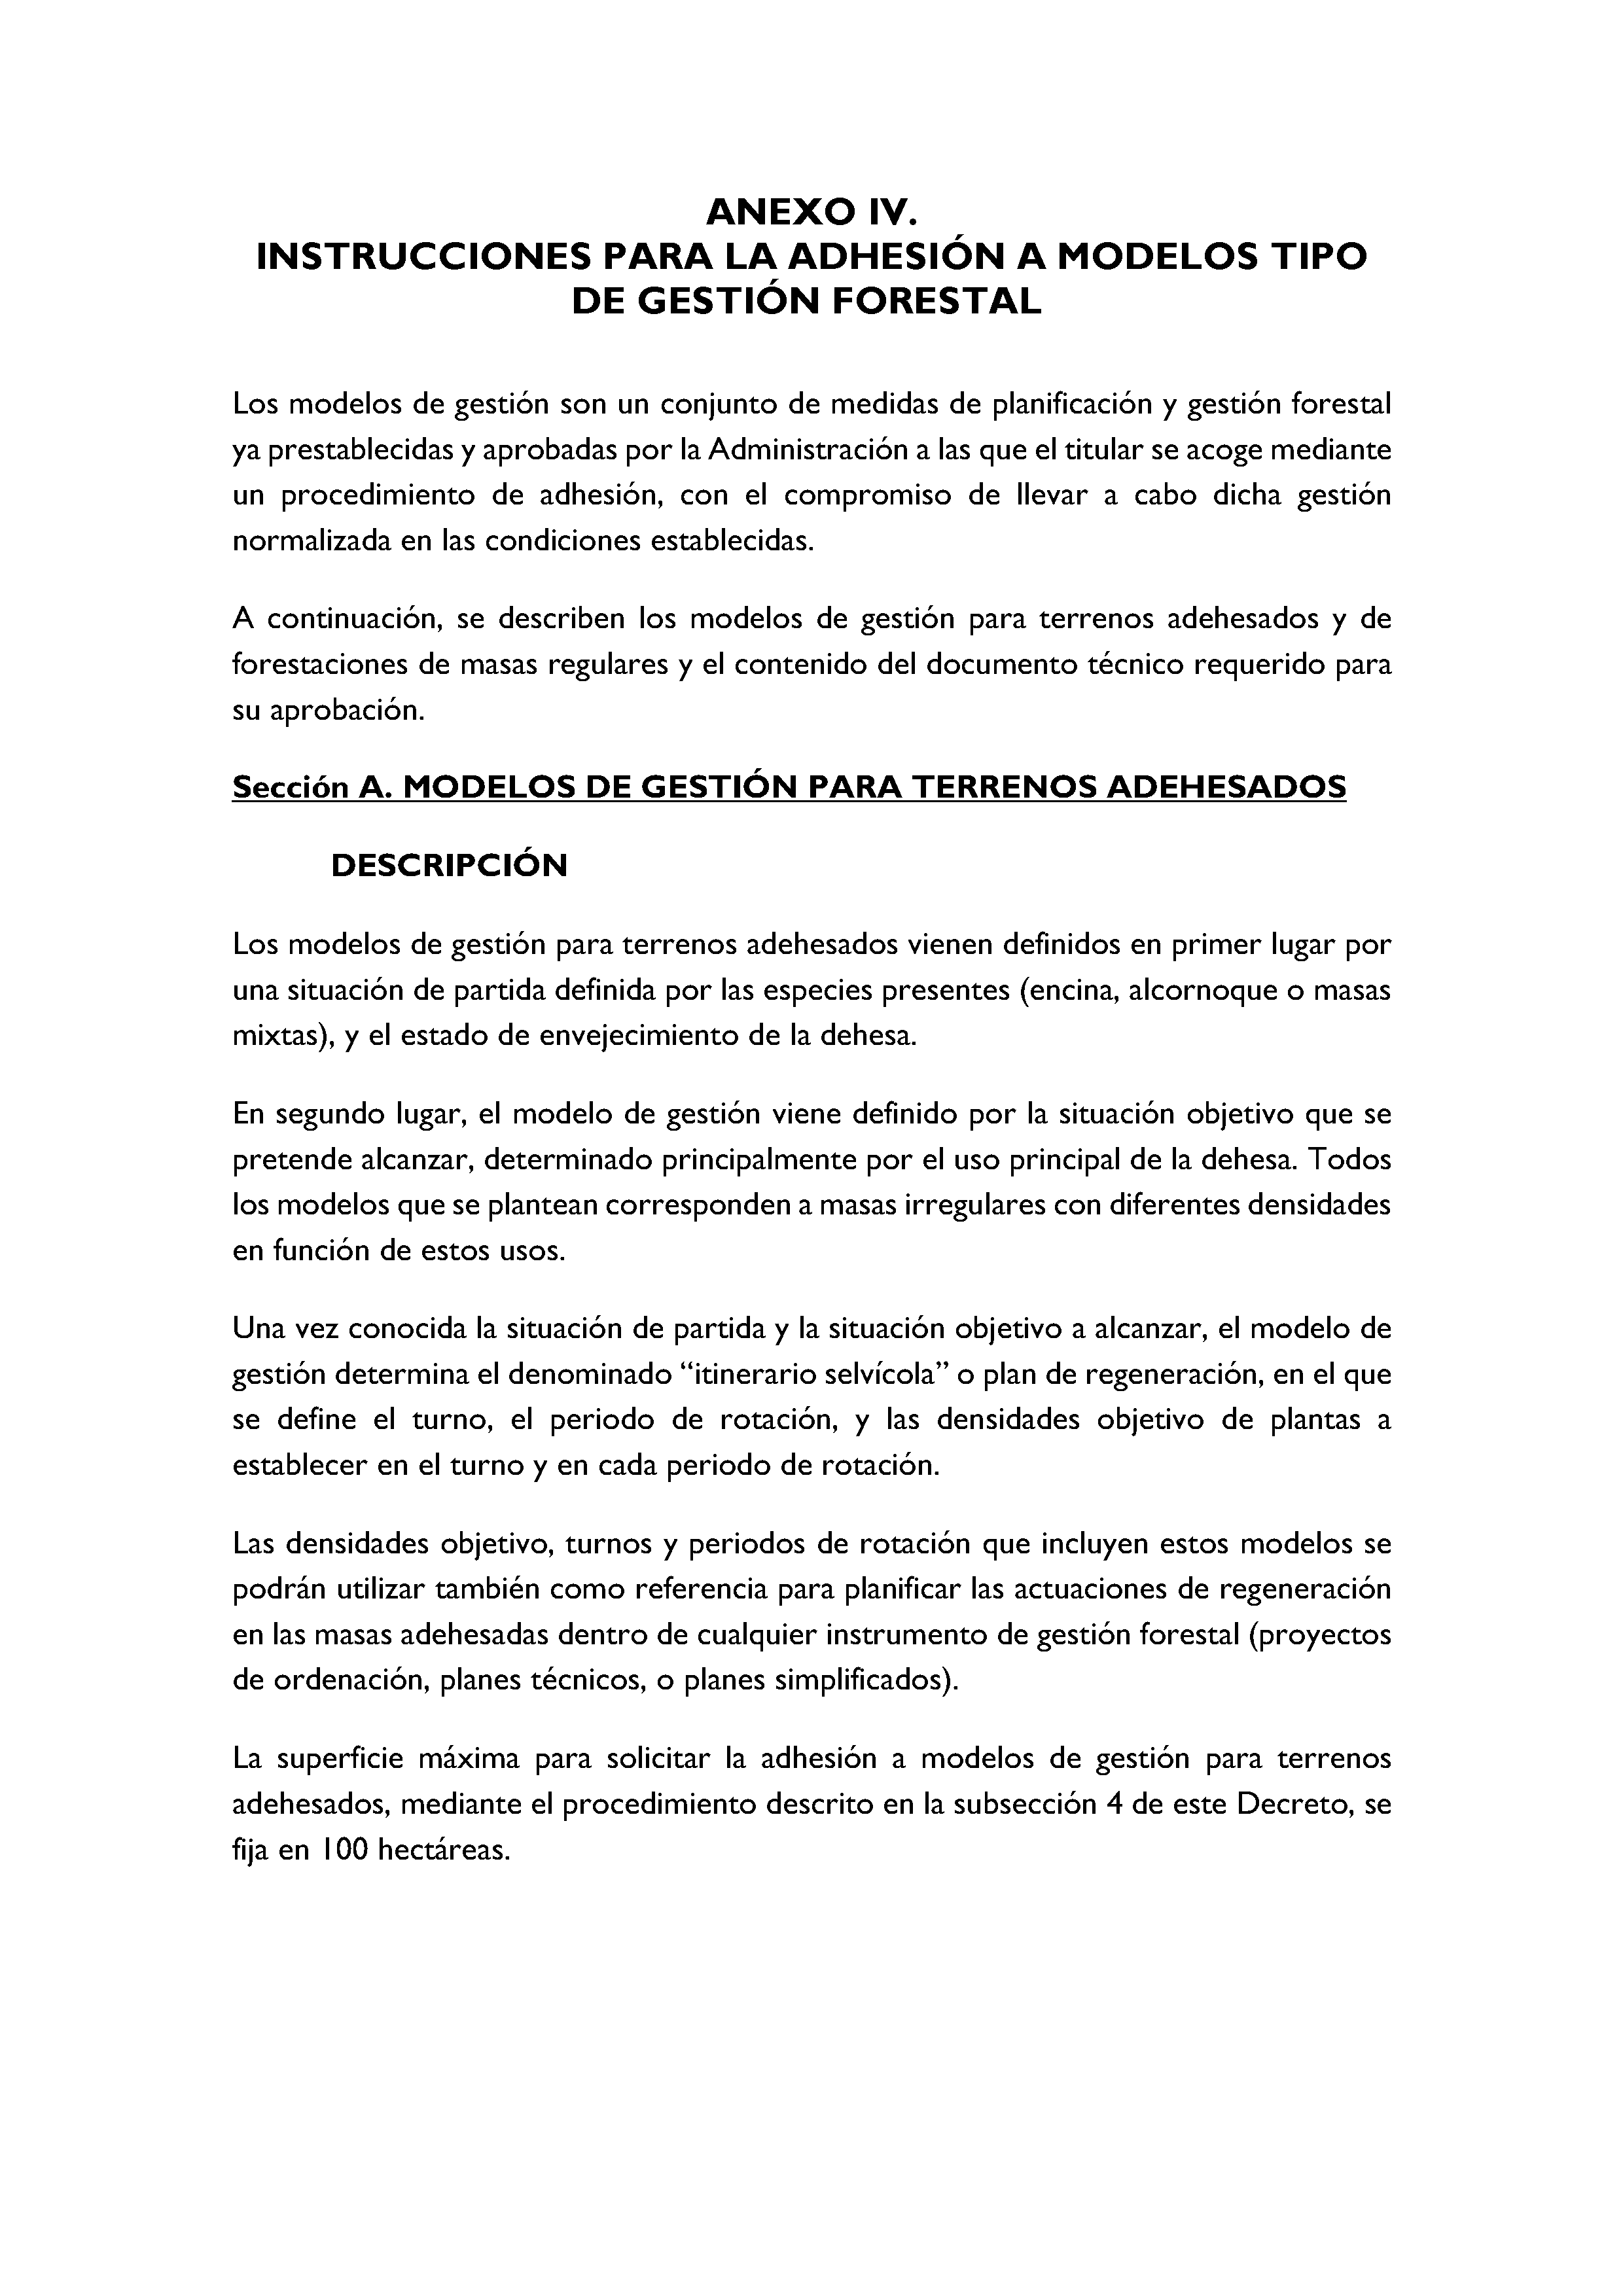 ANEXO - INSTRUCCIONES DE ORDENACIÓN DE LOS PROYECTOS DE ORDENACIÓN DE MONTES Pag 100